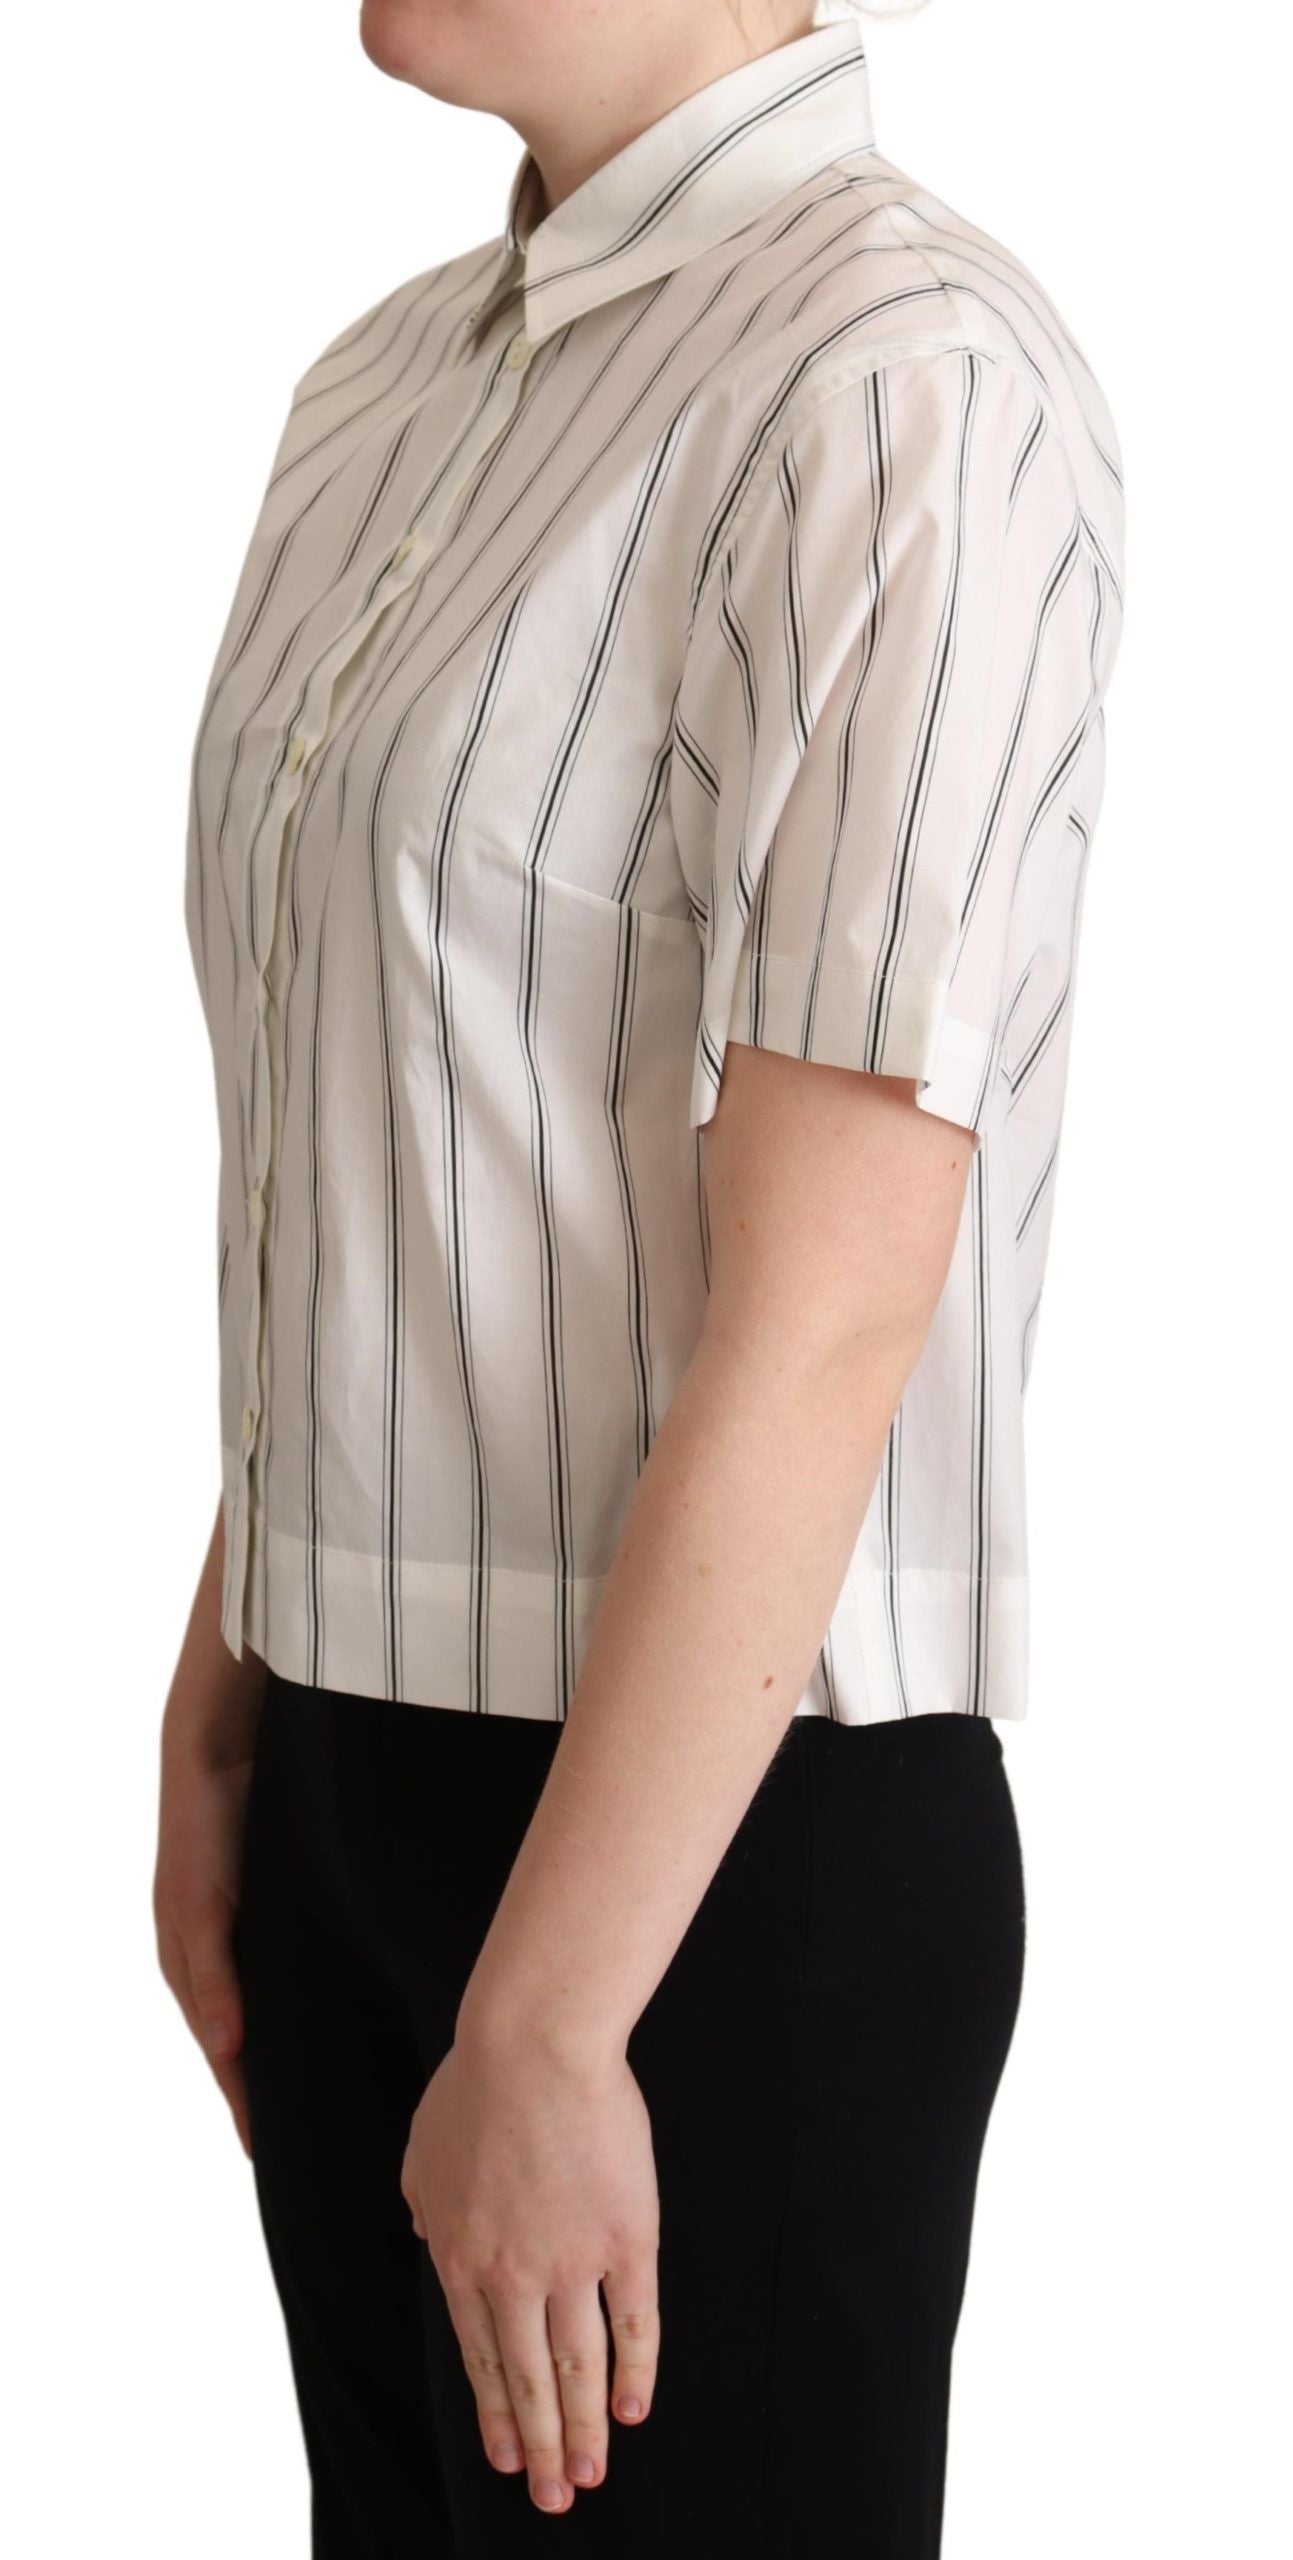 Dolce & Gabbana White Black Stripes Hemd Hemd Top